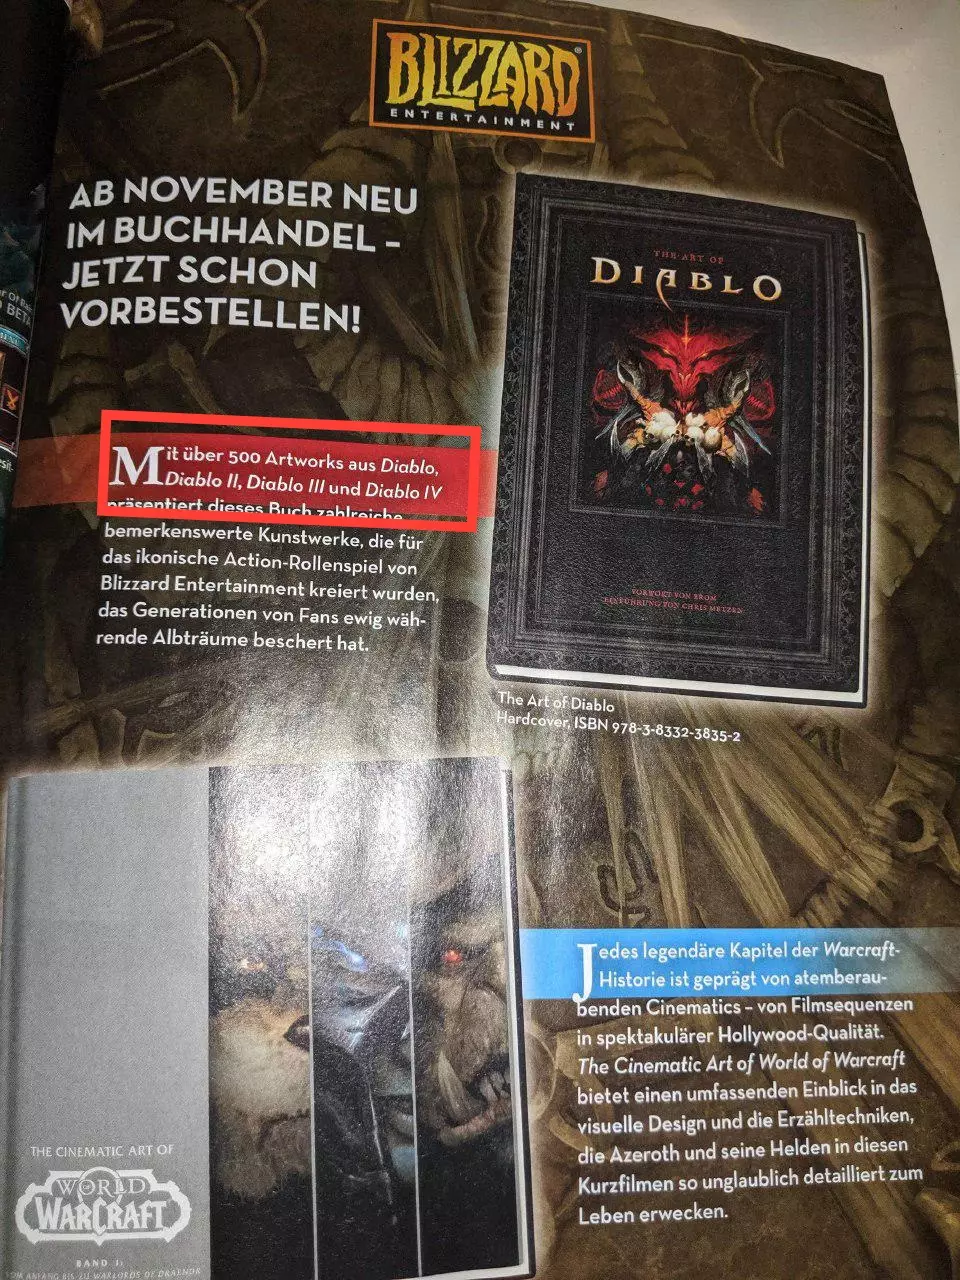 Снимок из артбука с упоминанием Diablo 4